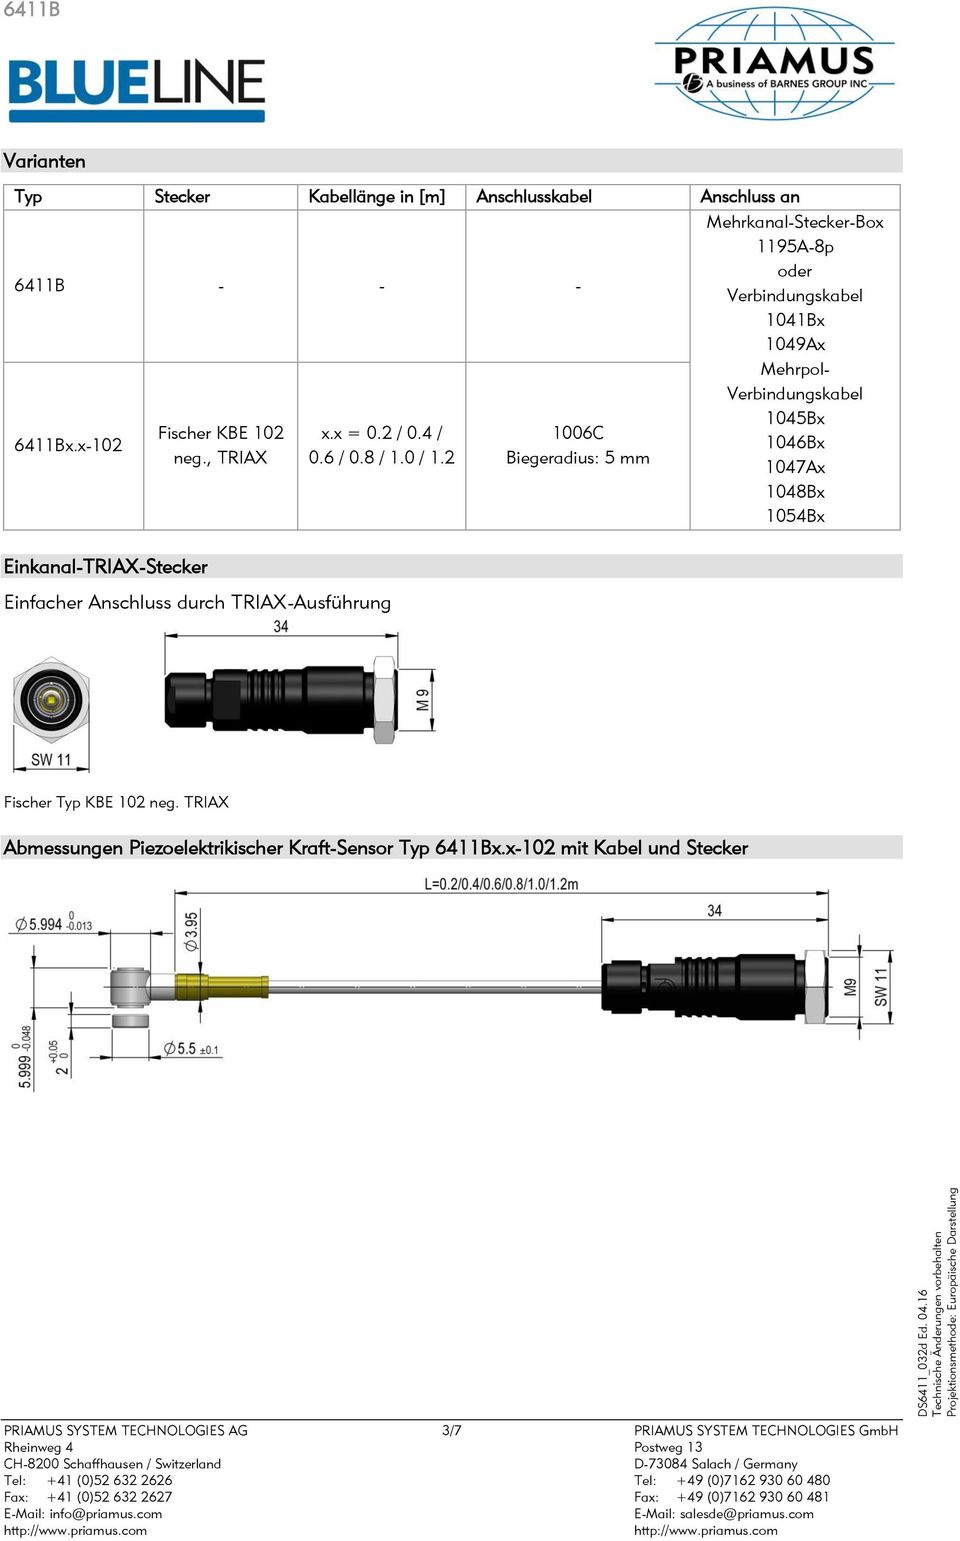 2 Einfacher Anschluss durch TRIAX-Ausführung 1006C Biegeradius: 5 mm Mehrkanal-Stecker-Box 1195A-8p oder Verbindungskabel 1041Bx 1049Ax